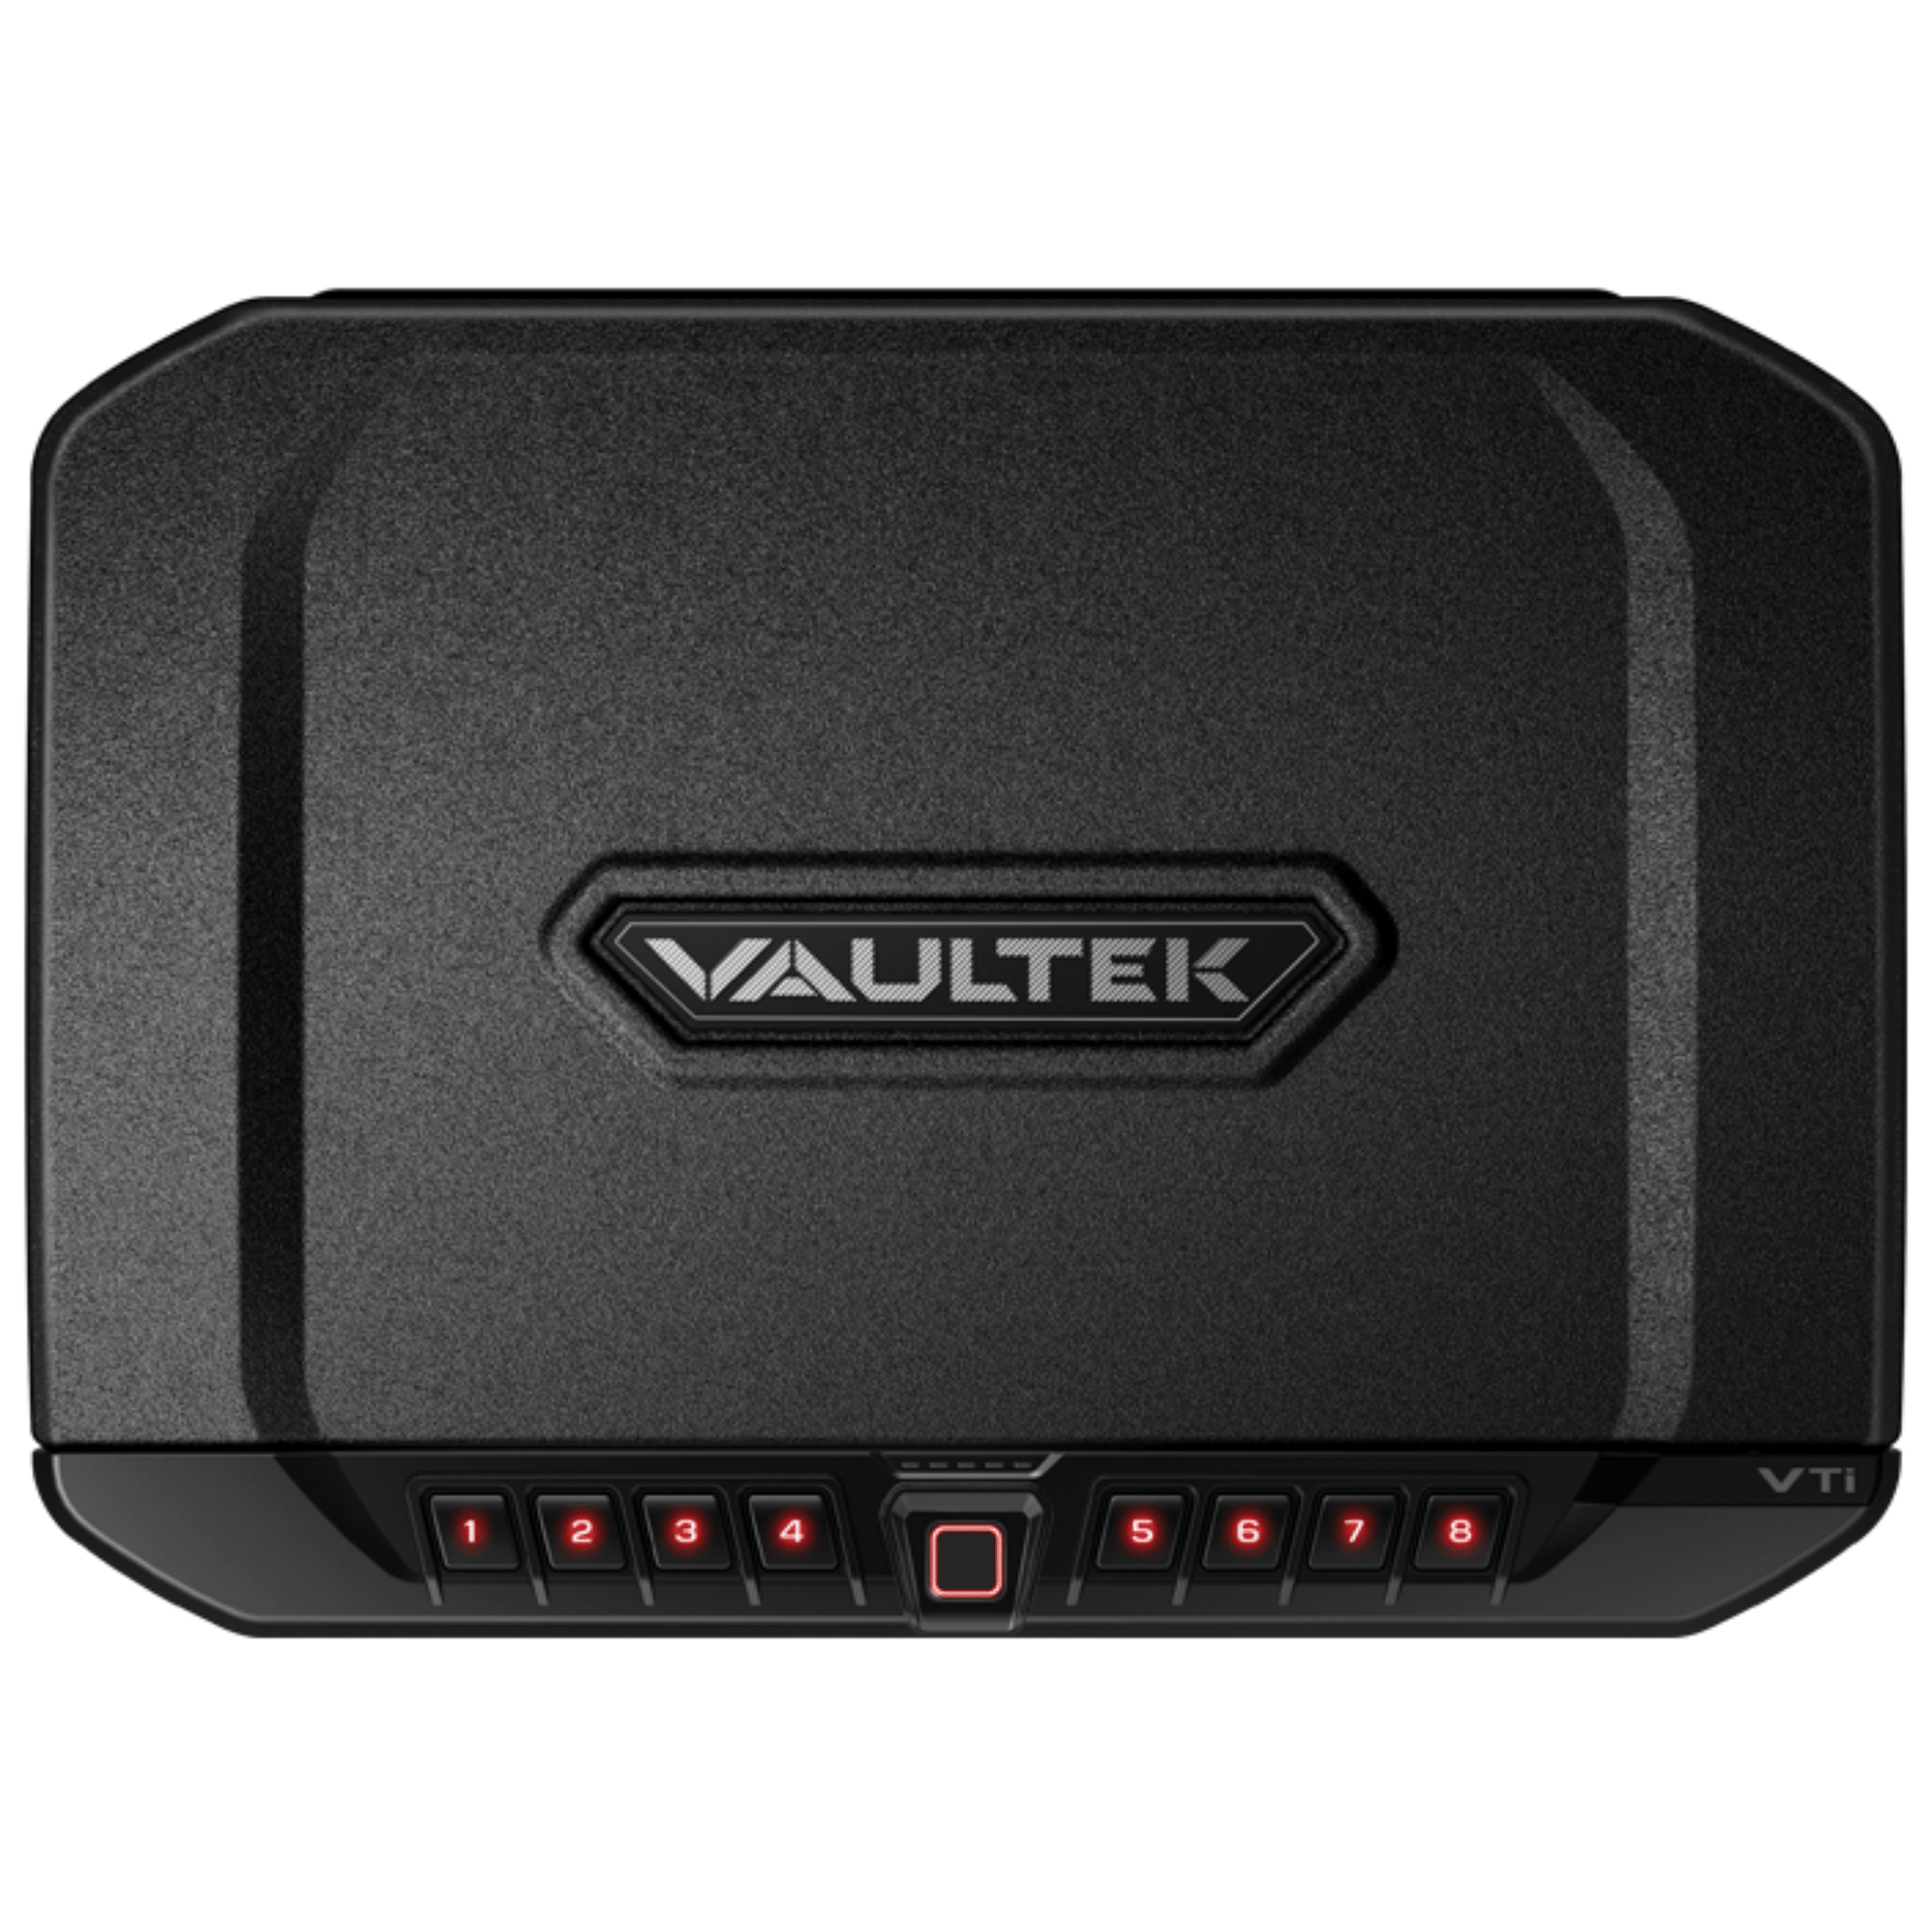 VAULTEK | PRO VTi - Bluetooth - Biometric | Liberty Safe Norcal.